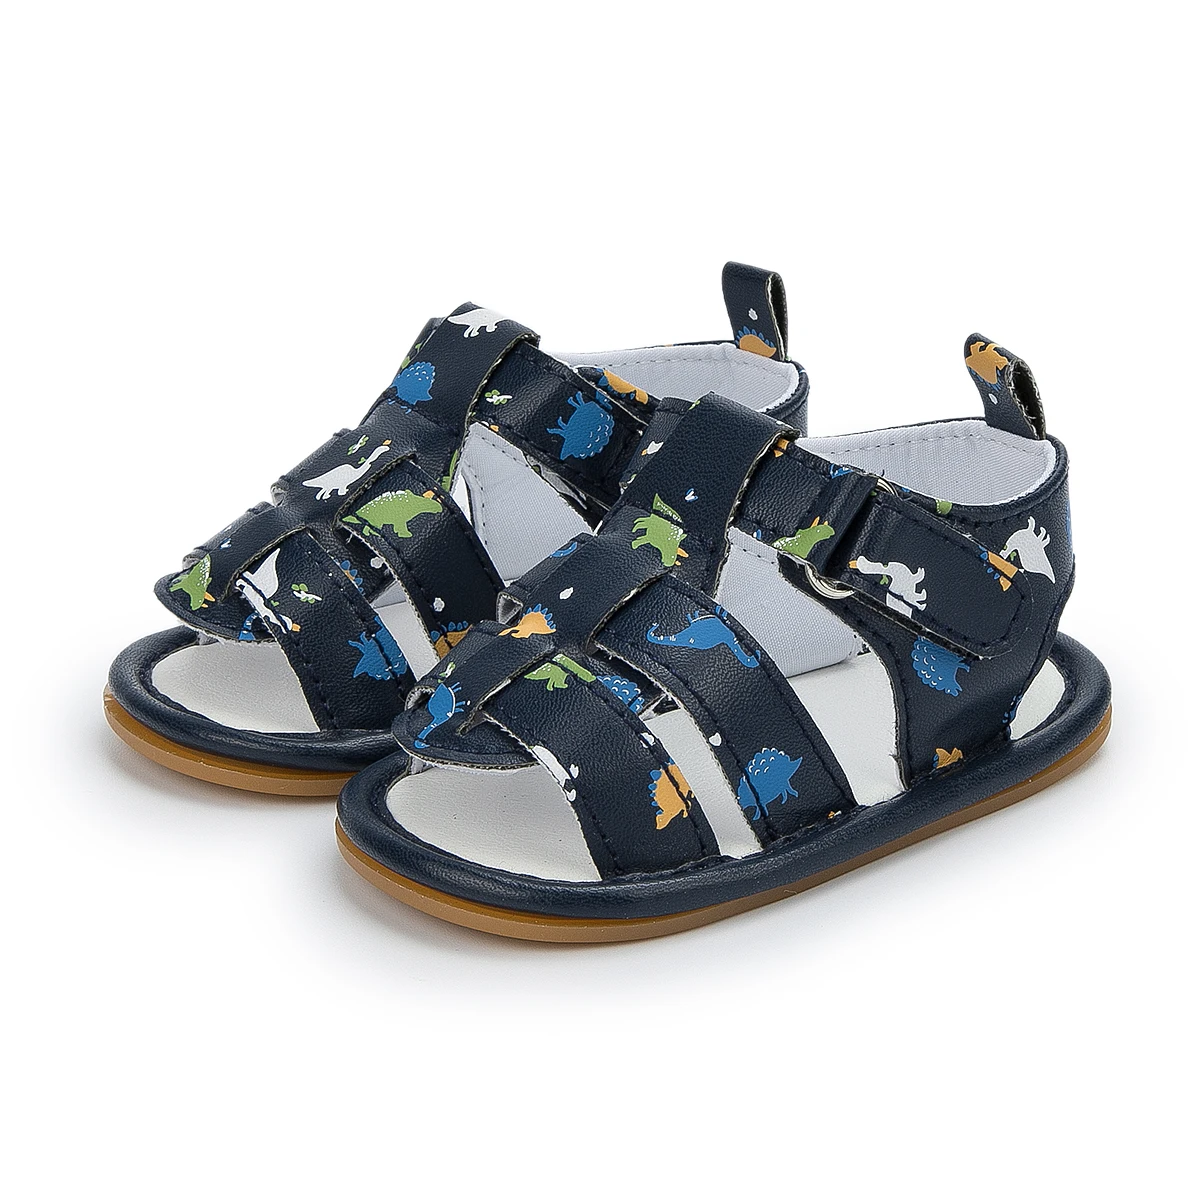 2023 New Design Rubber Sole Summer Outdoor Prewalk Toddler Boy Baby Sandals & Slippers